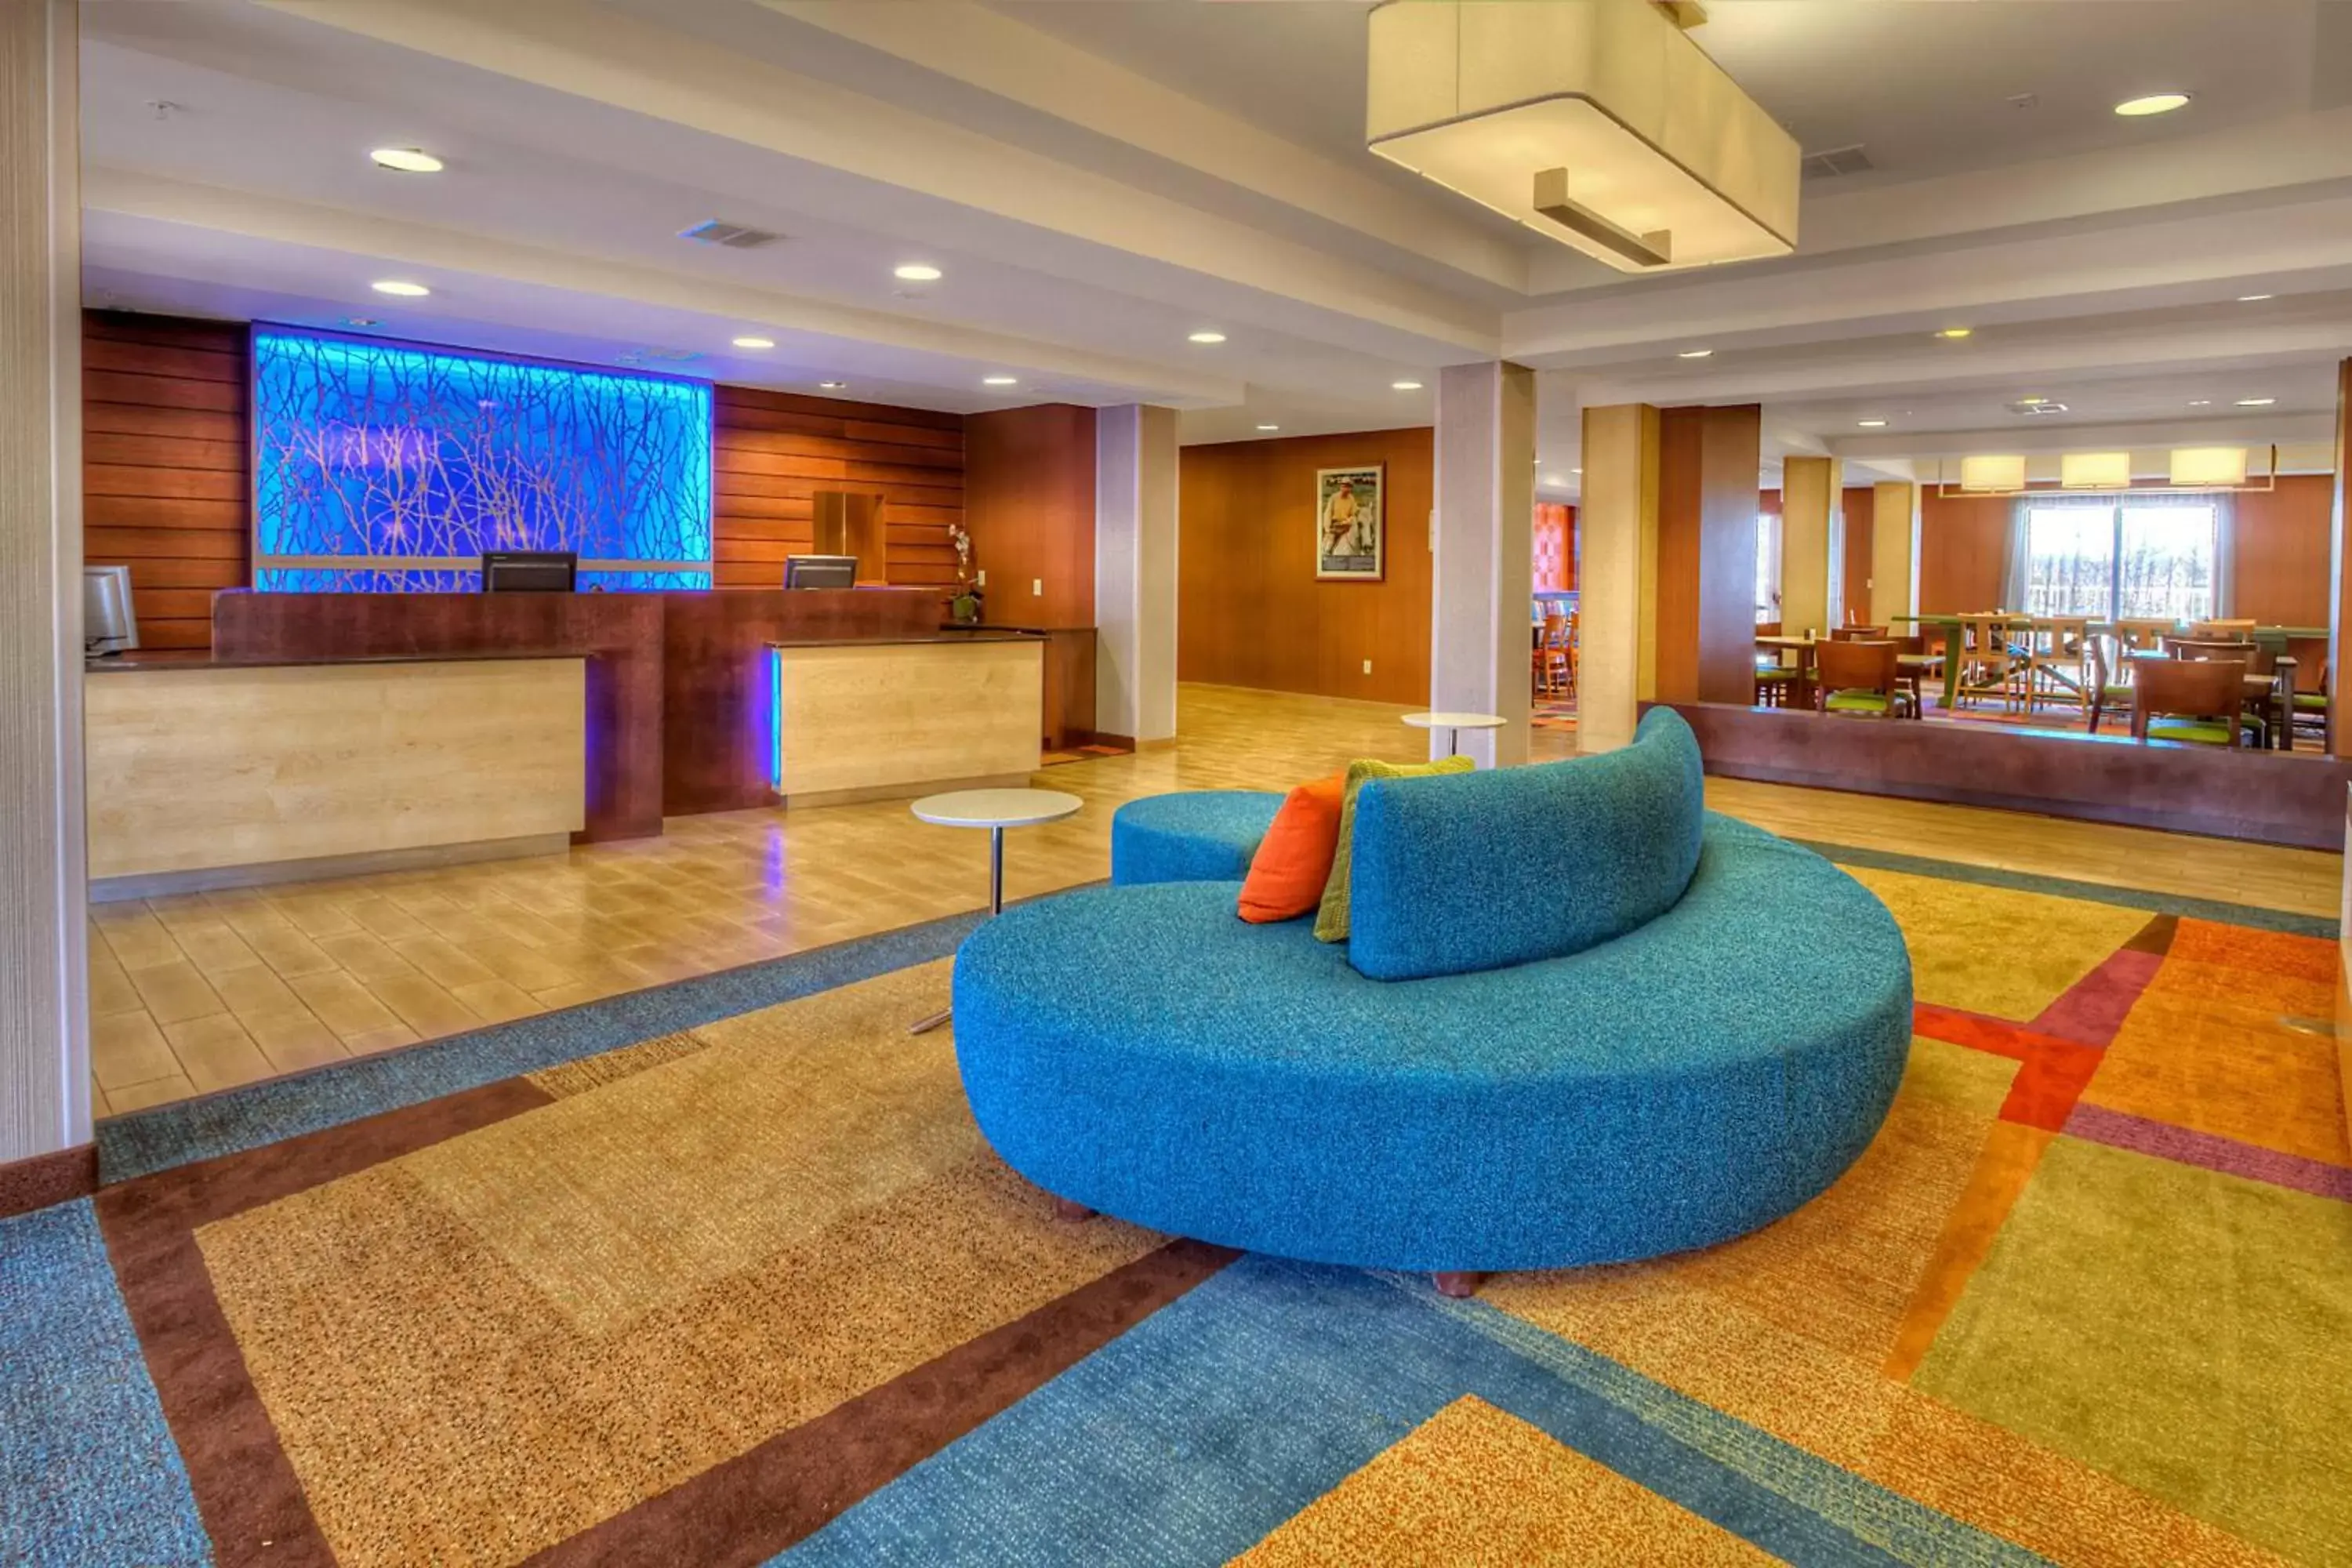 Lobby or reception, Lobby/Reception in Fairfield Inn & Suites by Marriott Edmond